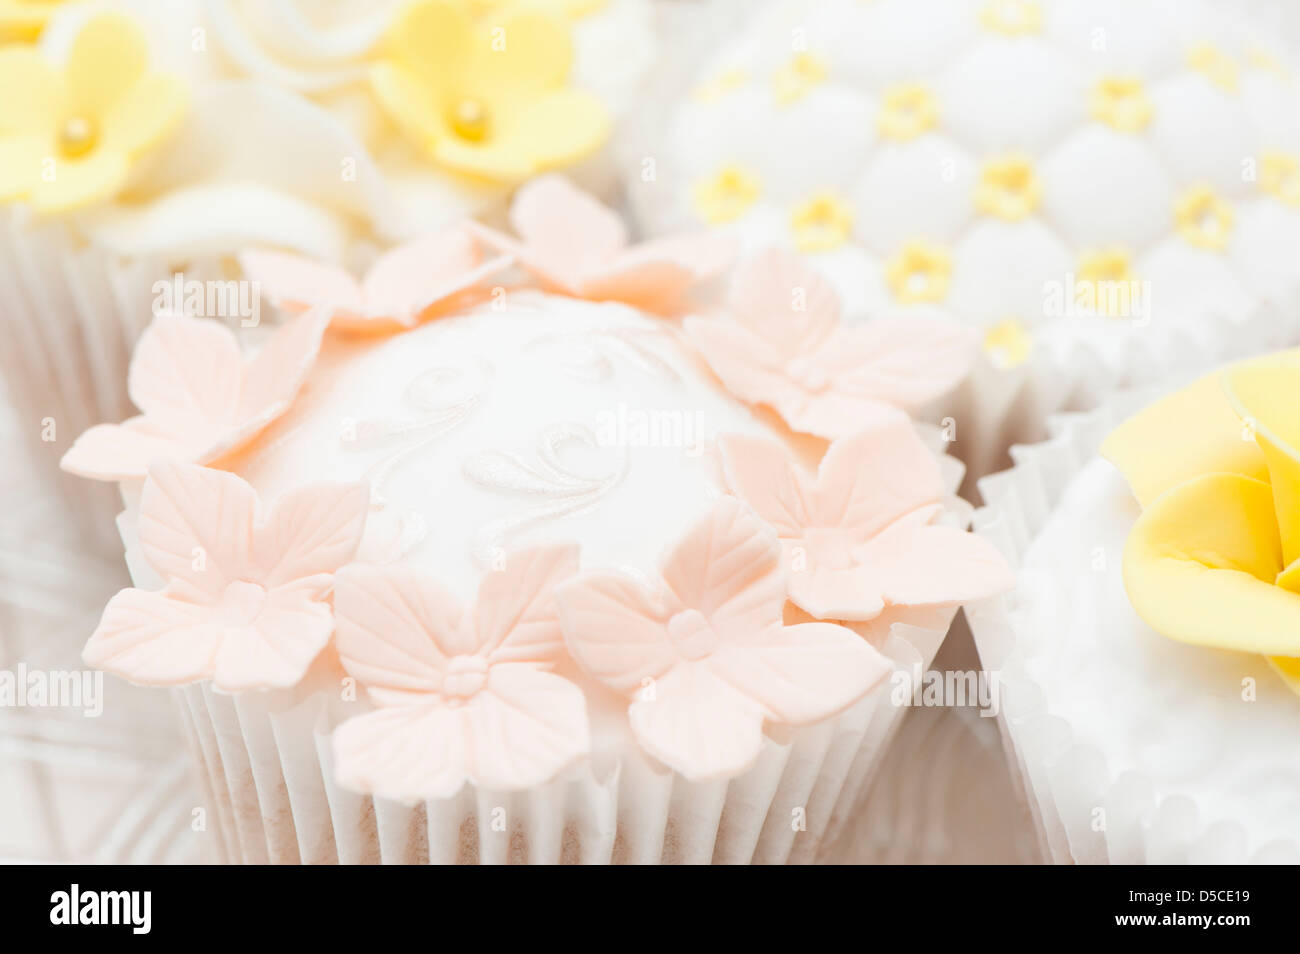 Cupcakes mixtes dans des tons pastel, style shabby chic avec décorations sugarcraft Banque D'Images